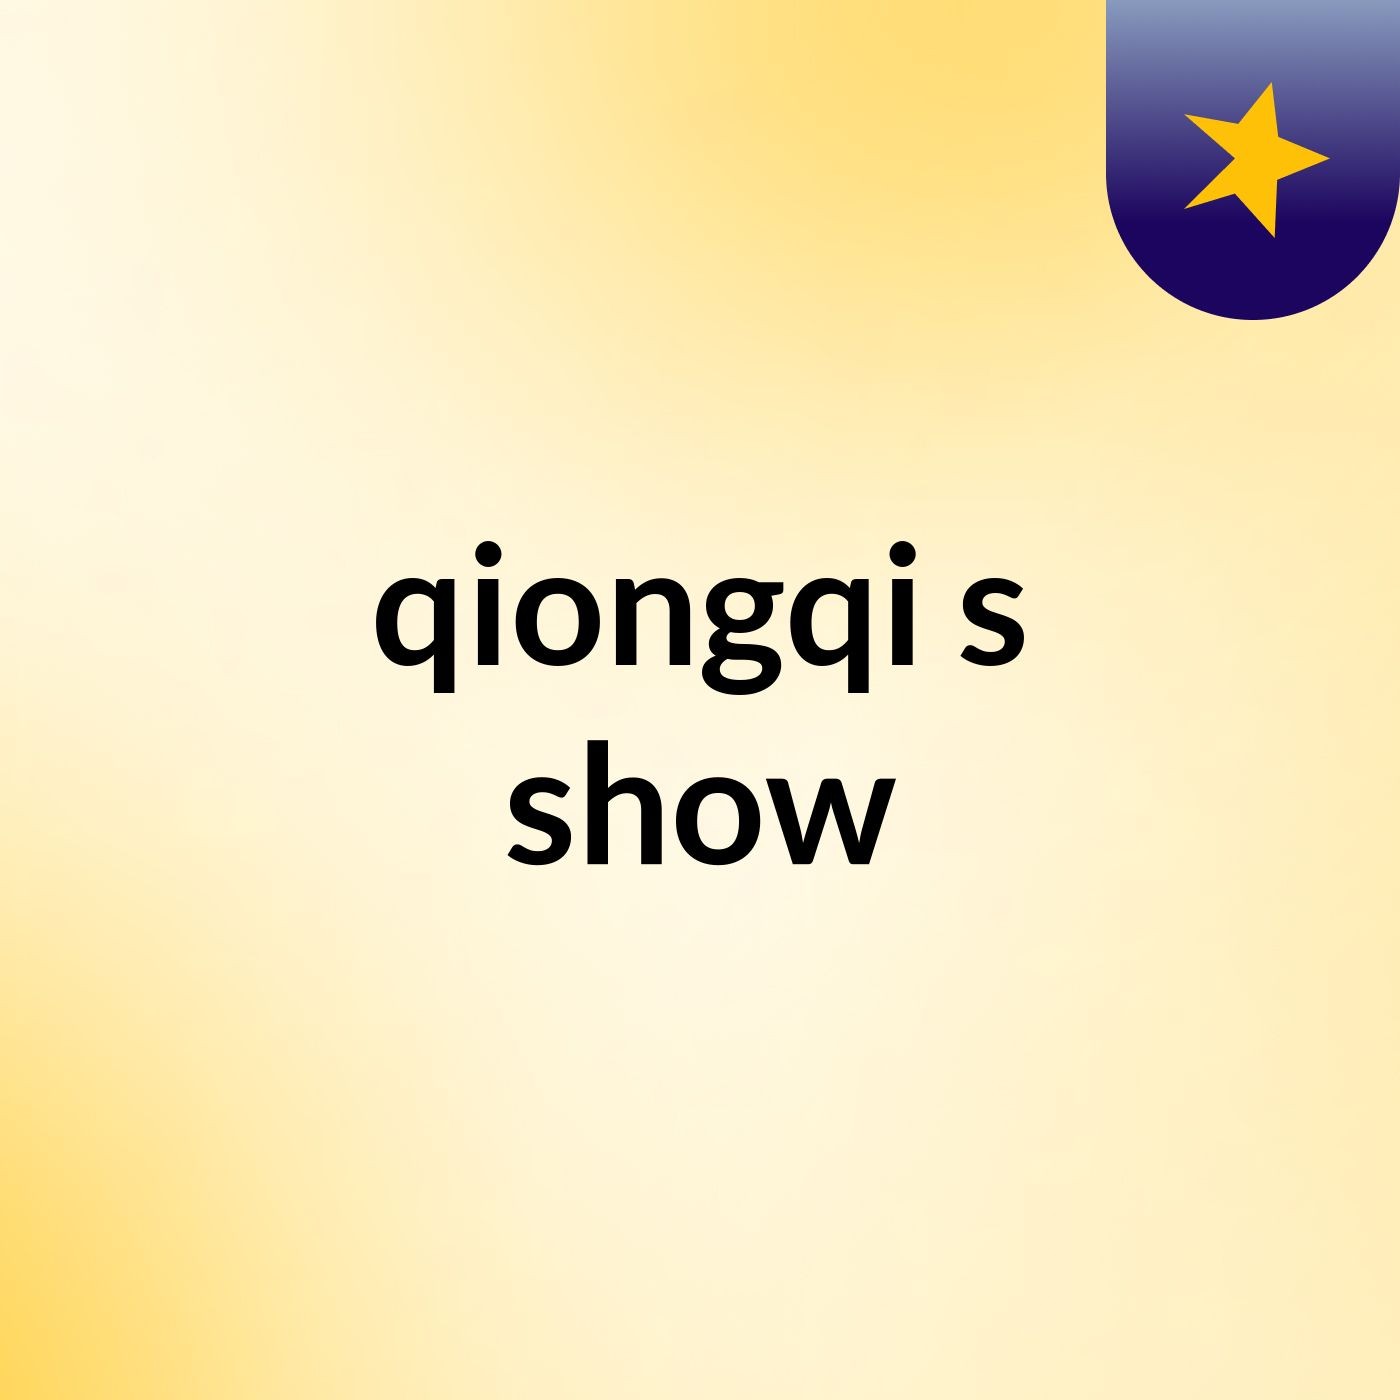 qiongqi's show